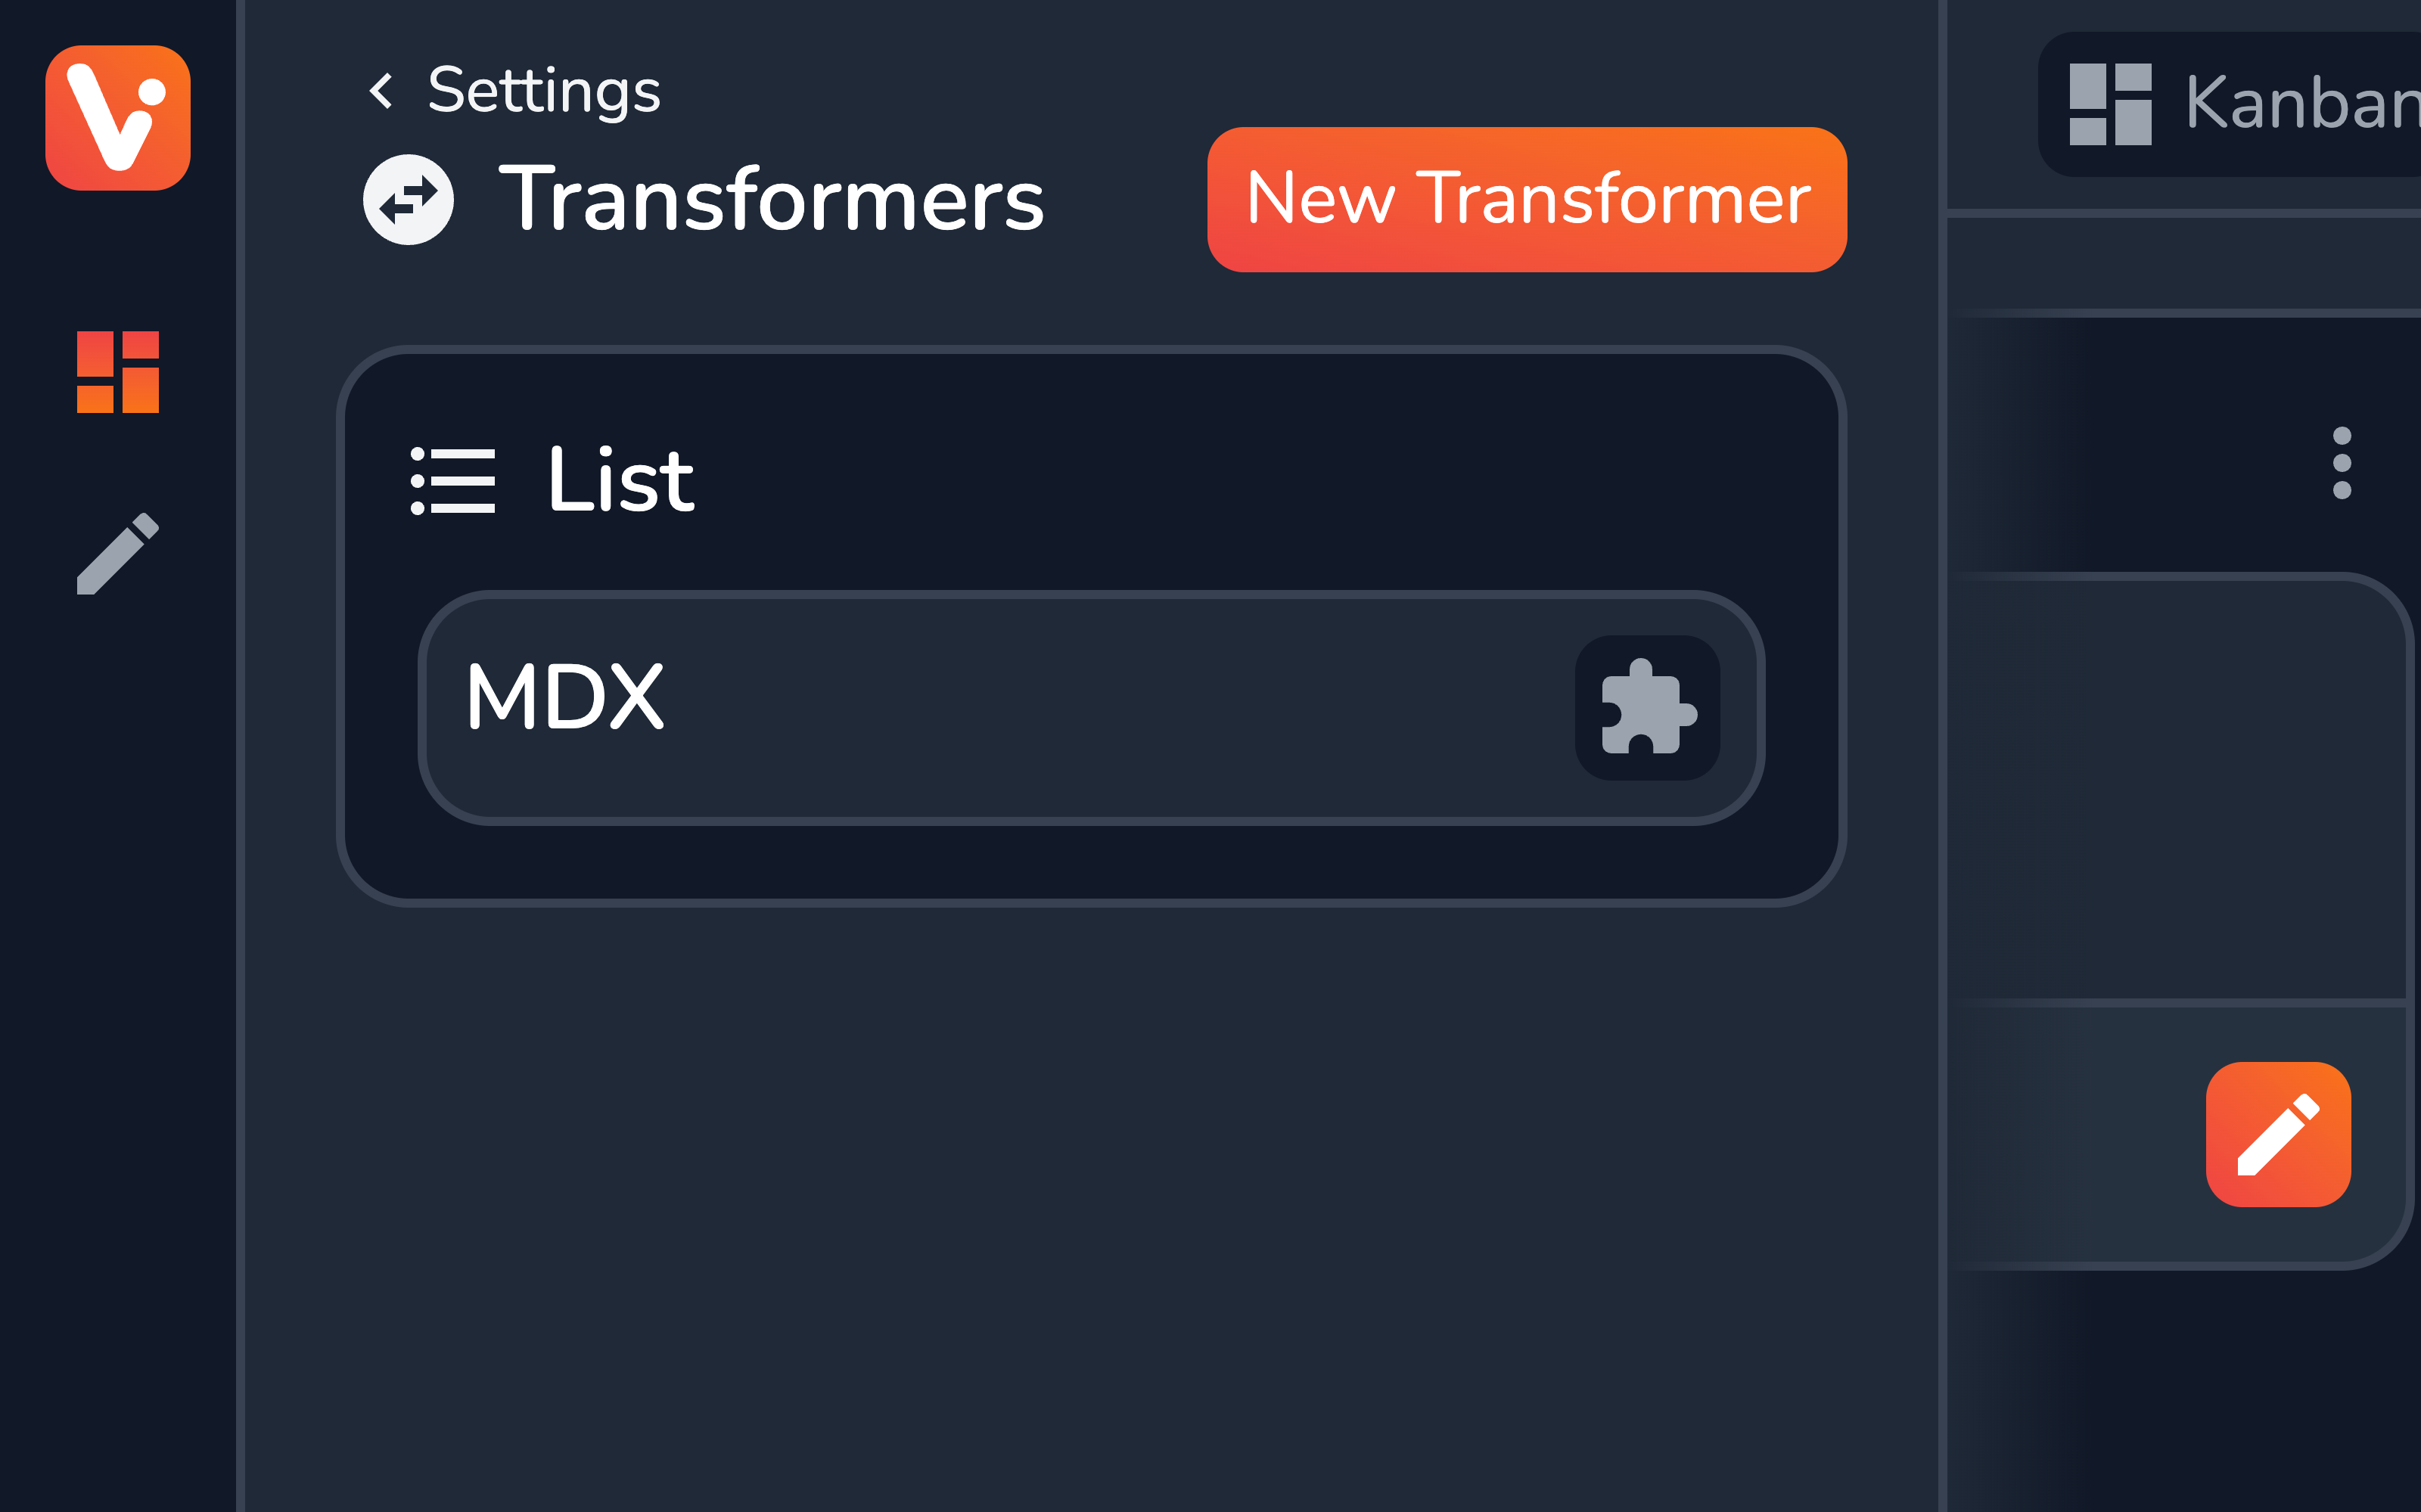 MDX transformer